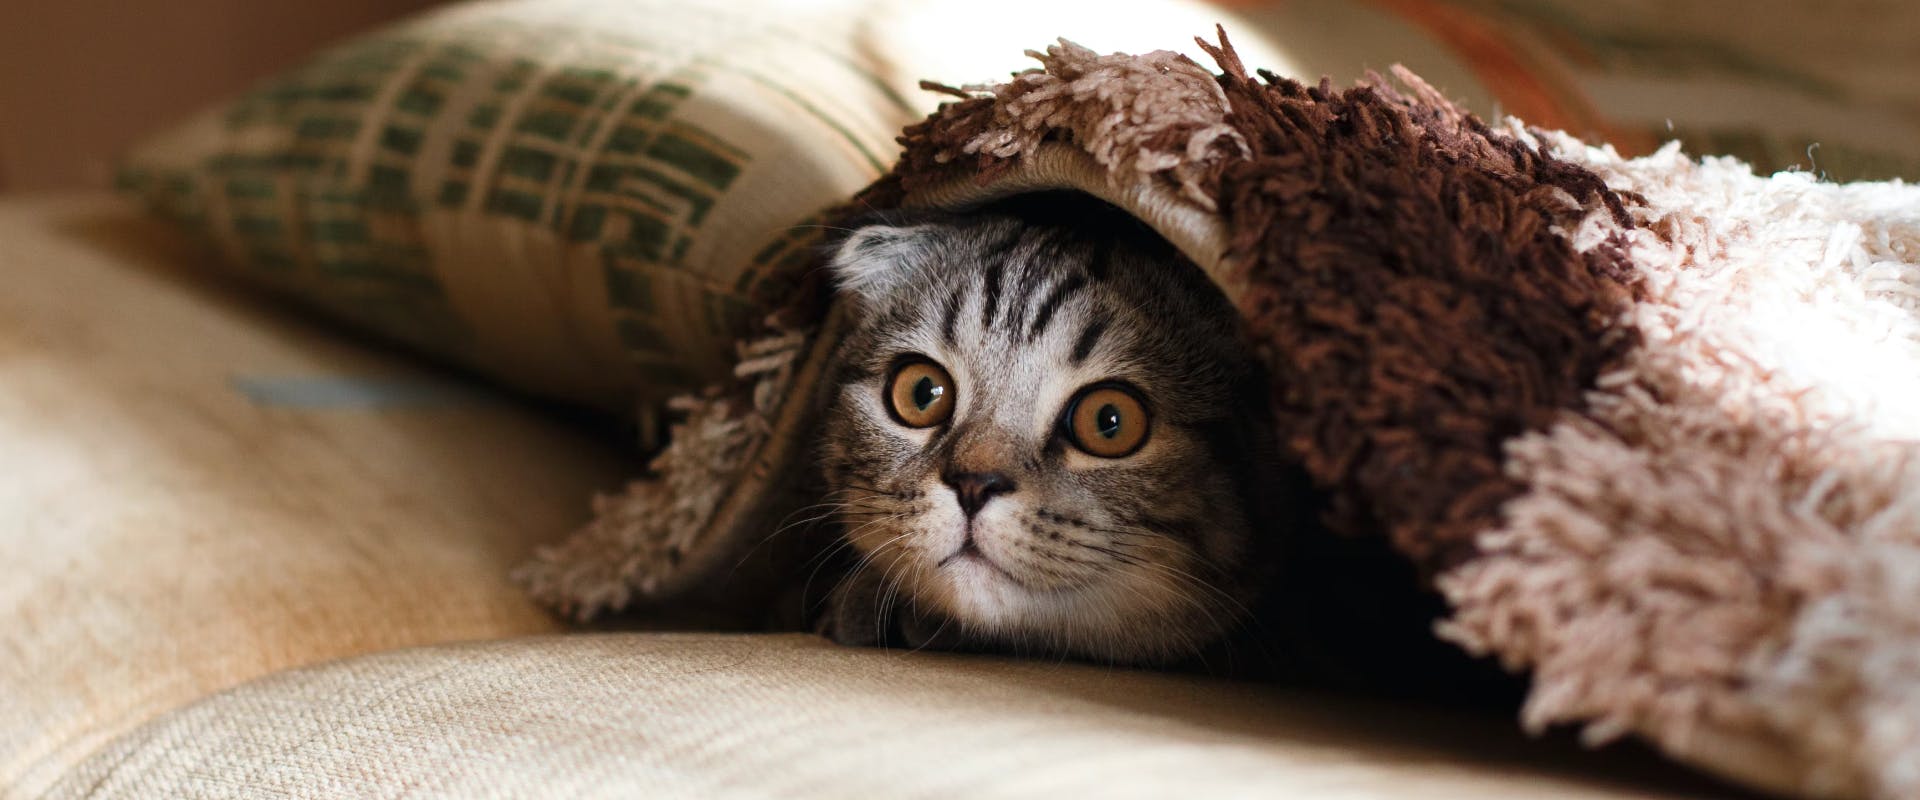 A kitten hiding under a blanket